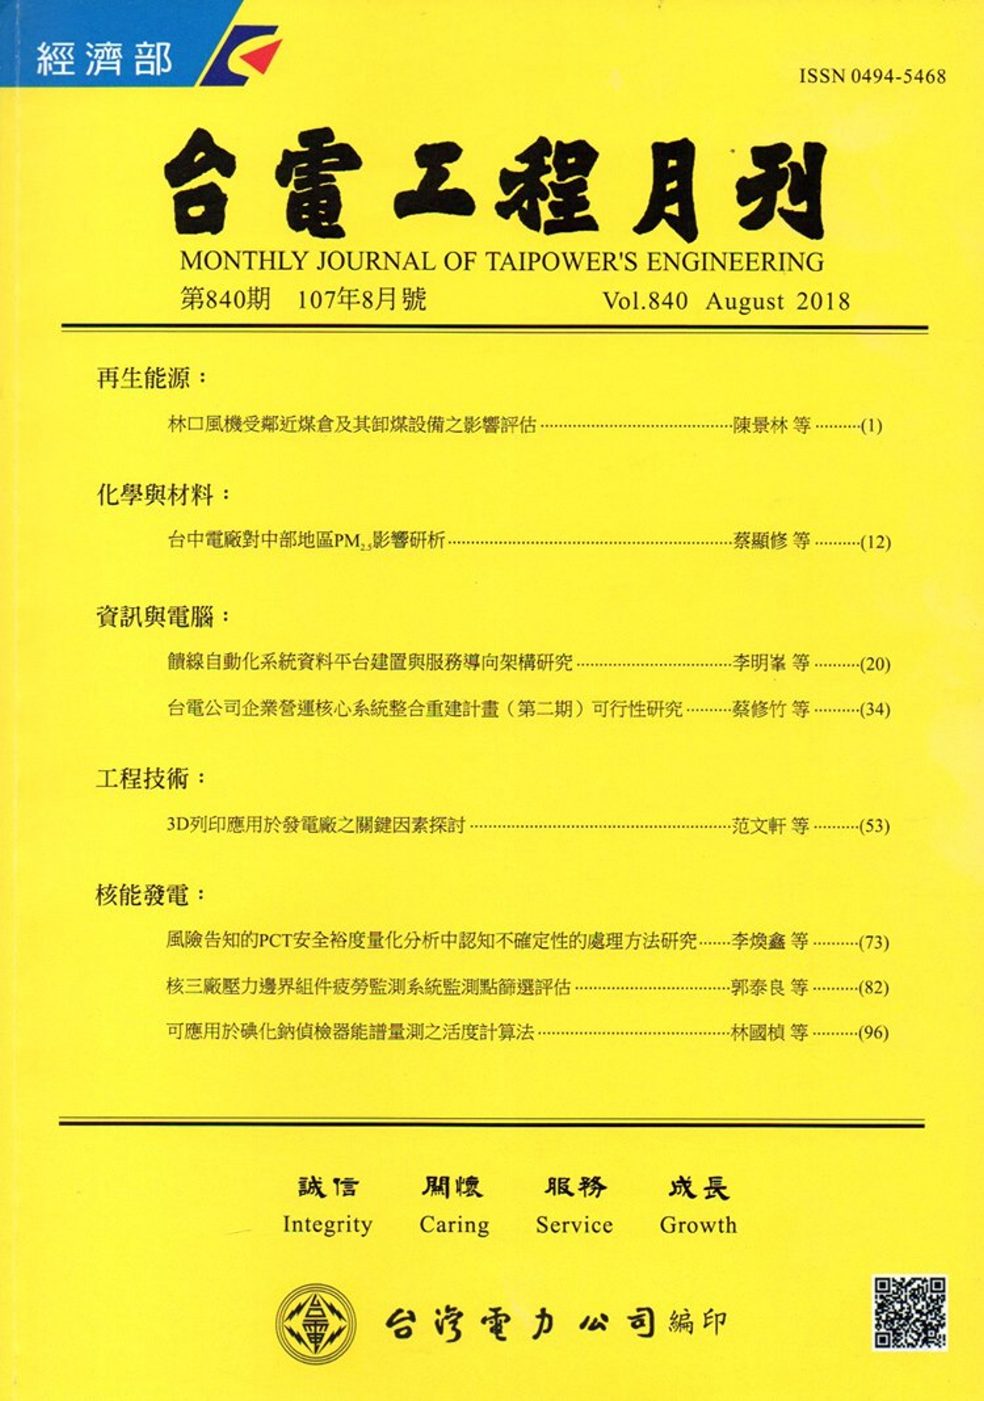 台電工程月刊第840期107/08